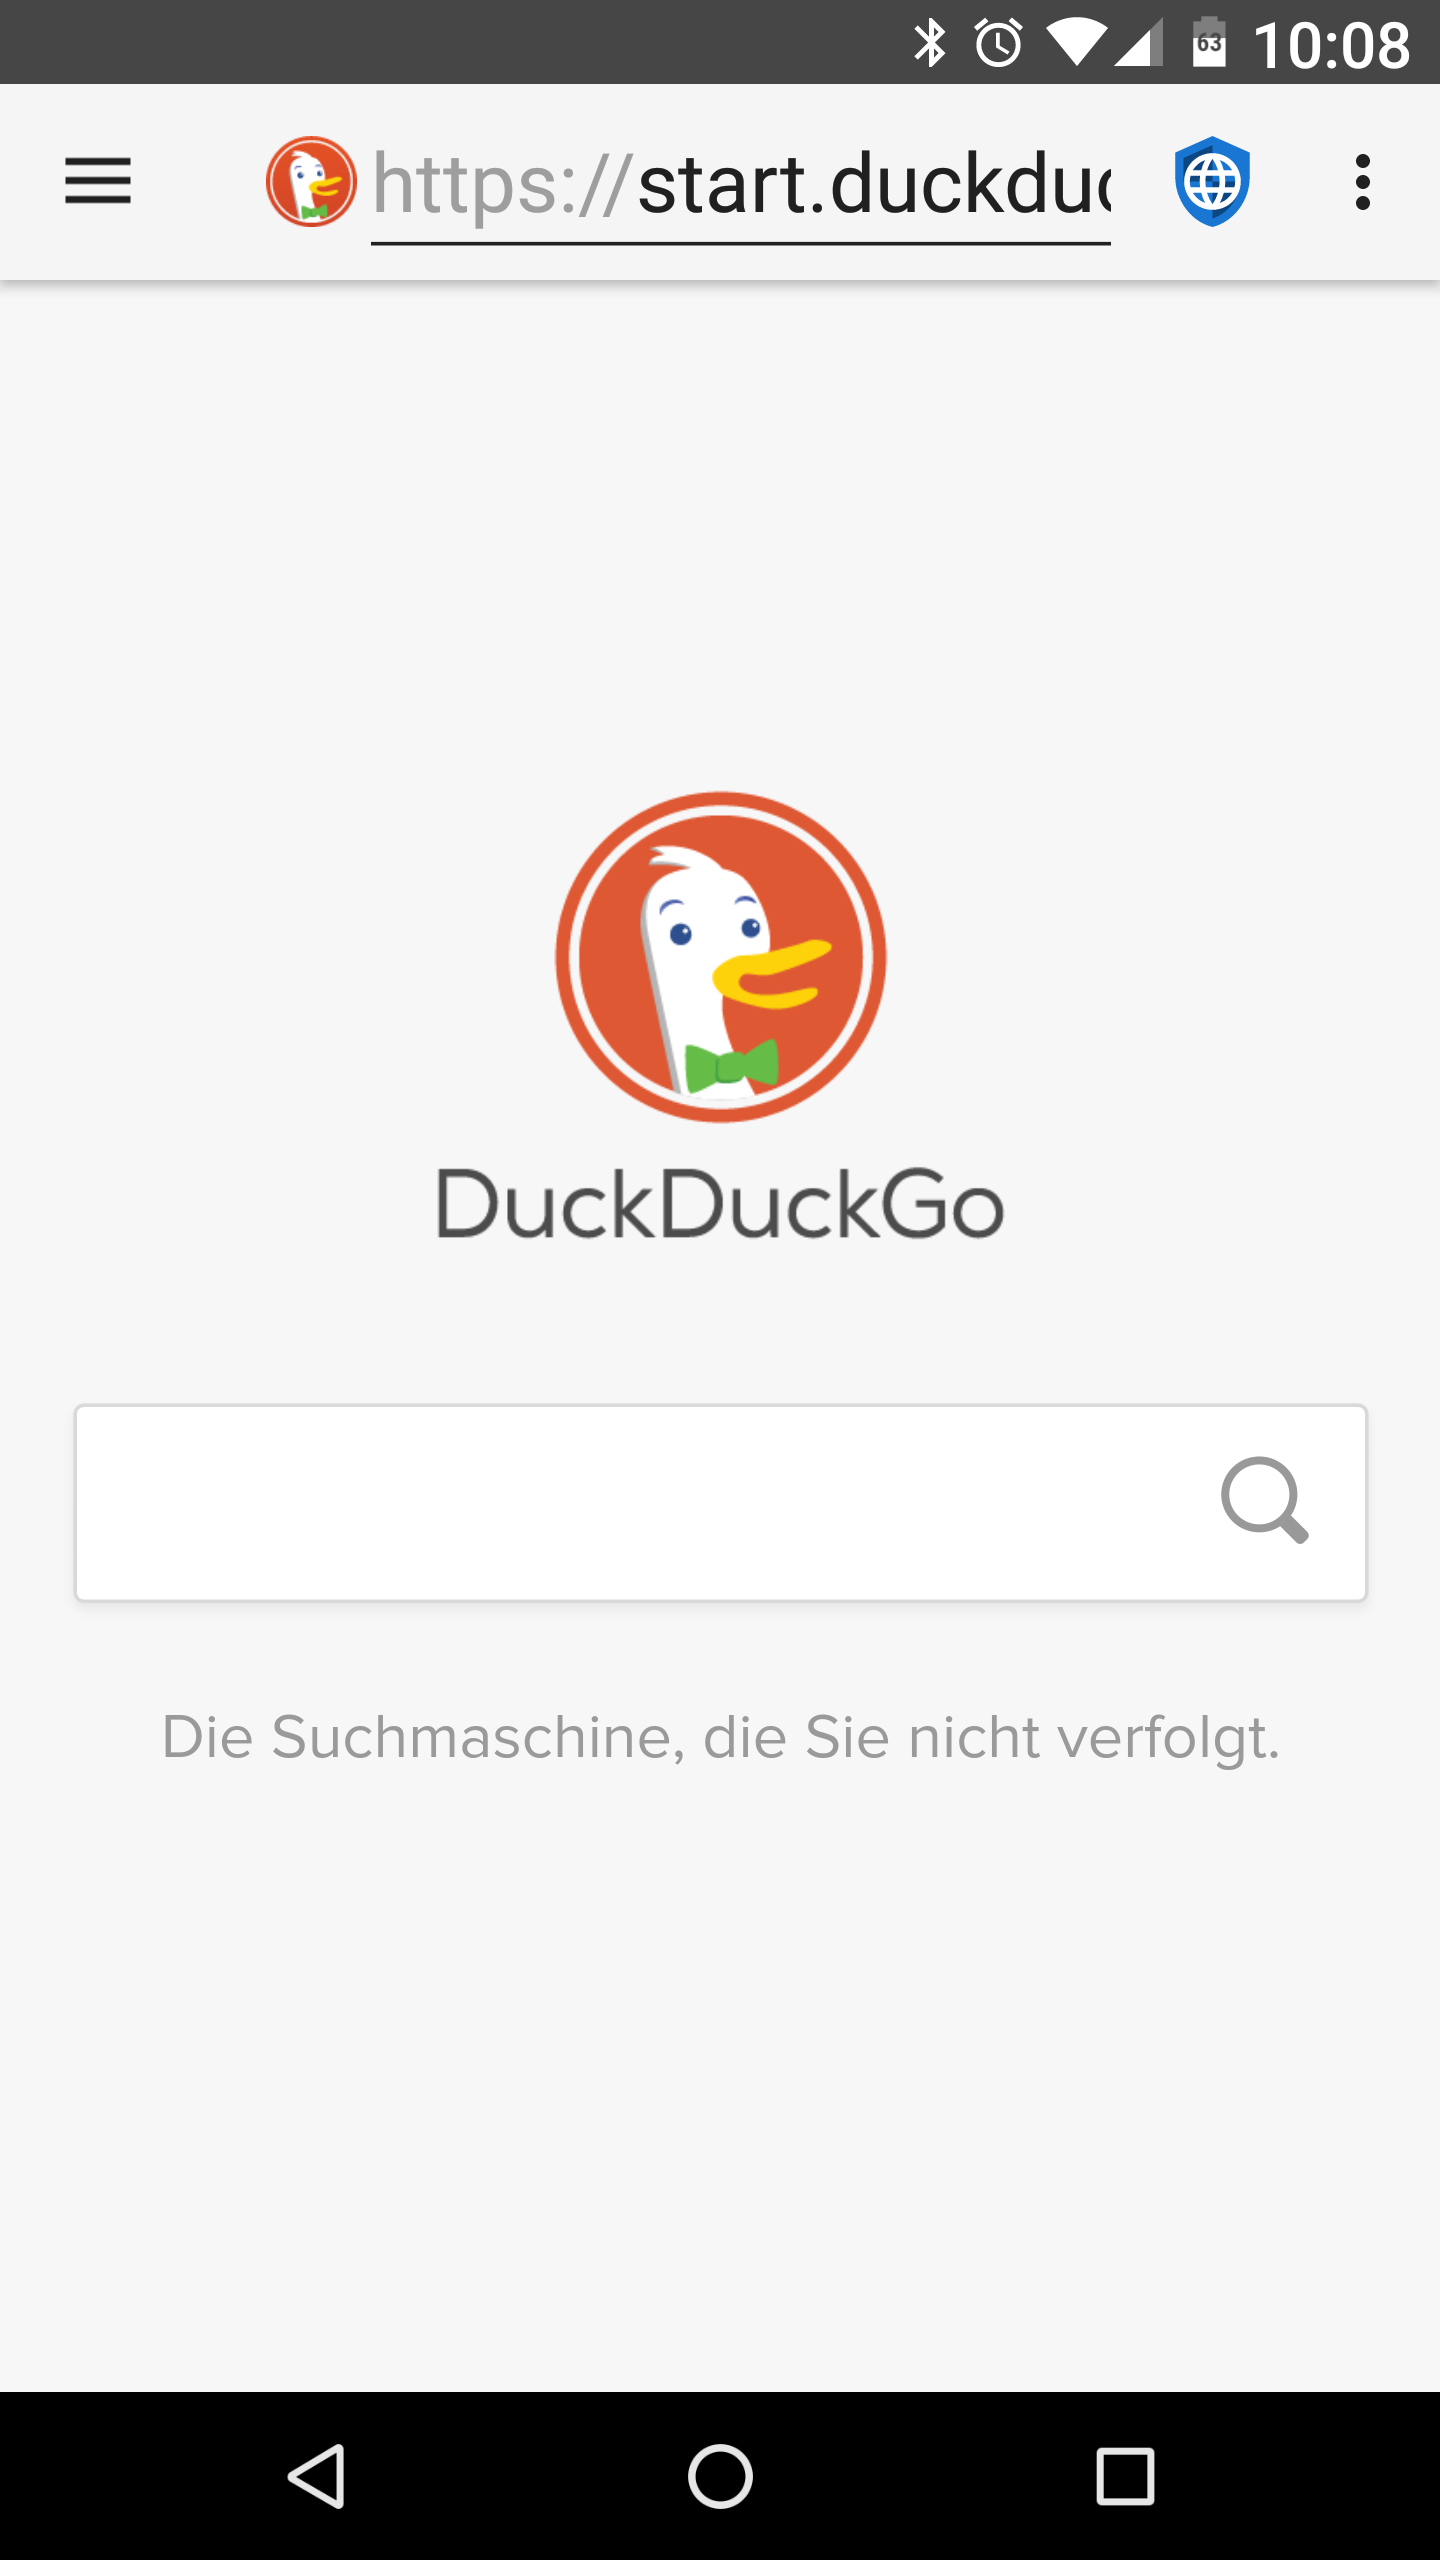 fastlane/metadata/android/de/phoneScreenshots/01 - DuckDuckGo - de.png